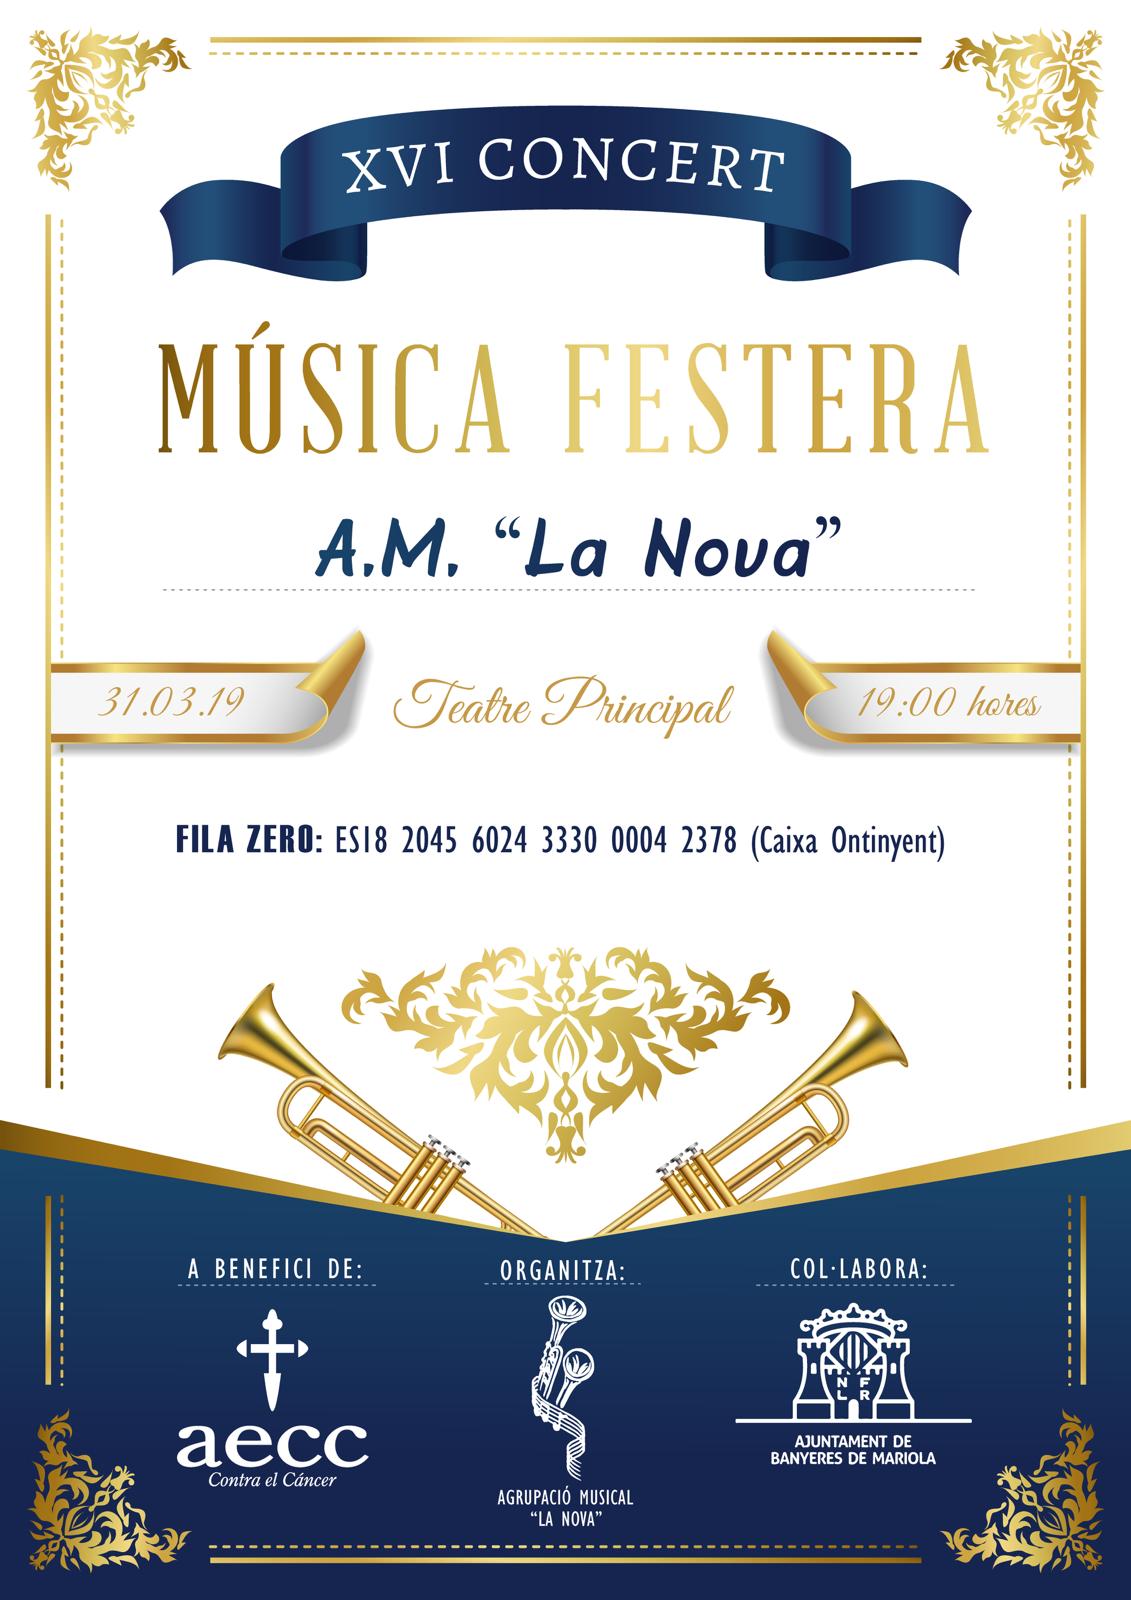 XVI CONCERT MÚSICA FESTERA A.M. "LA NOVA"